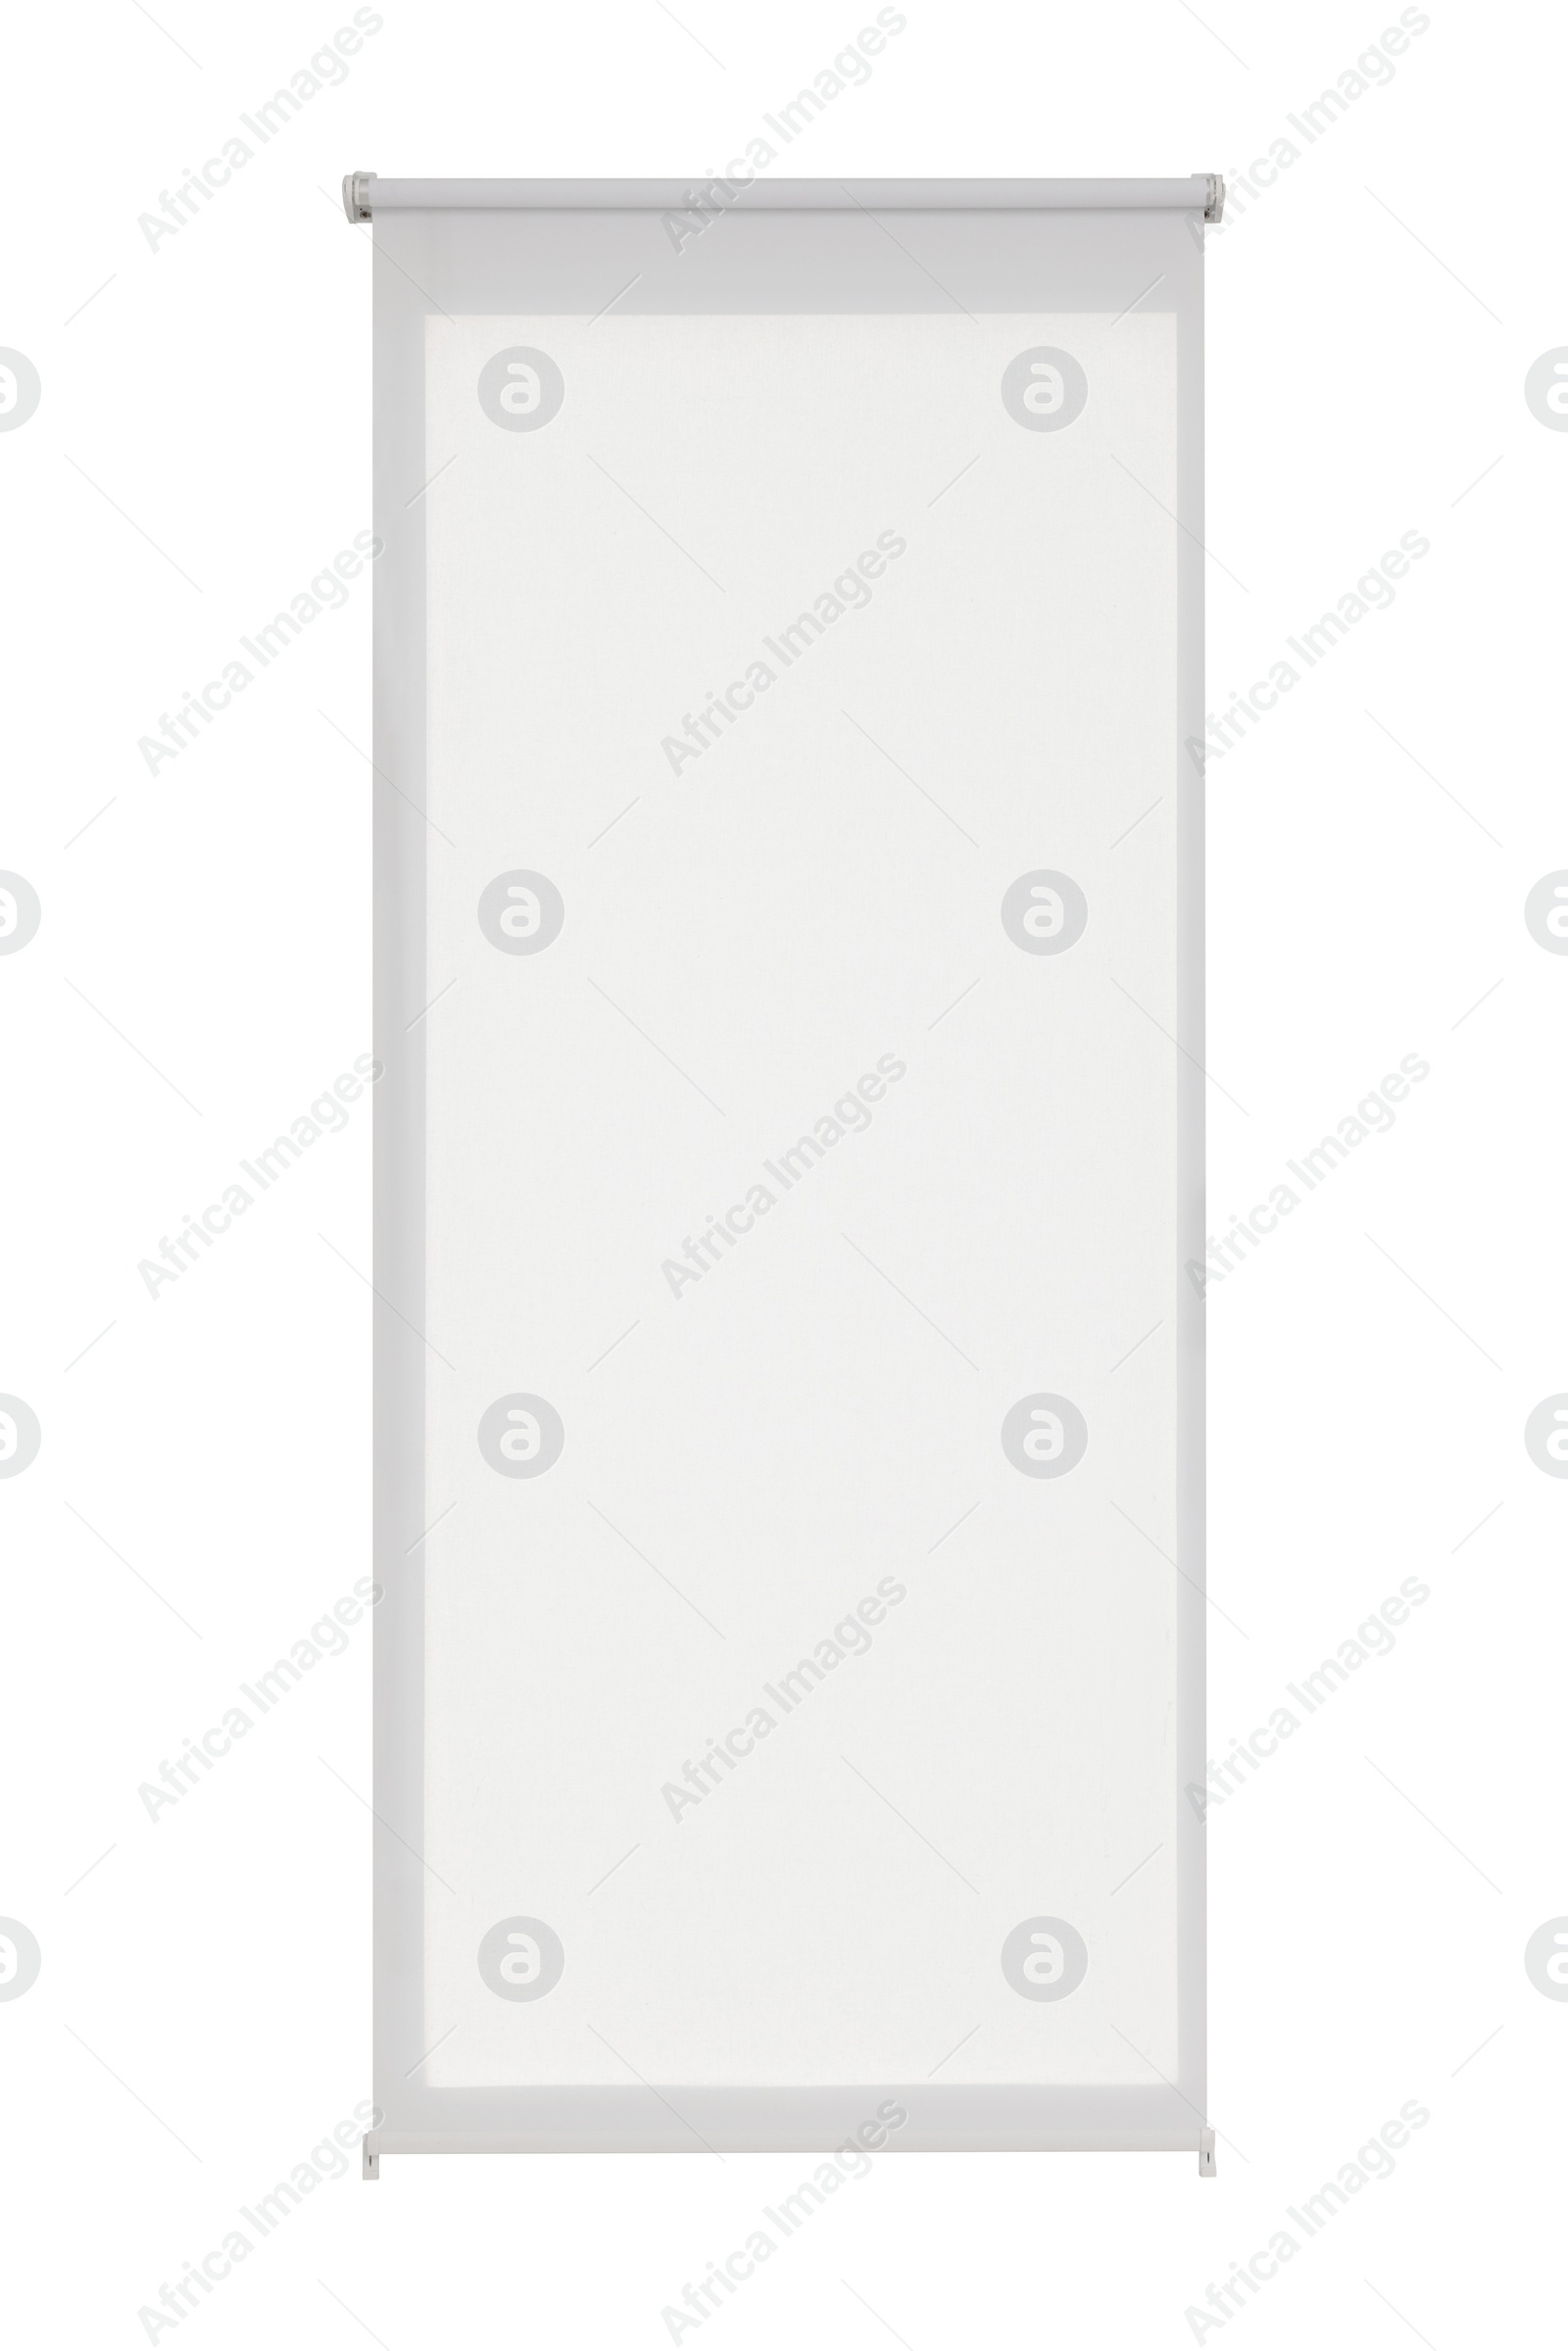 Image of Stylish window roller blind on white background